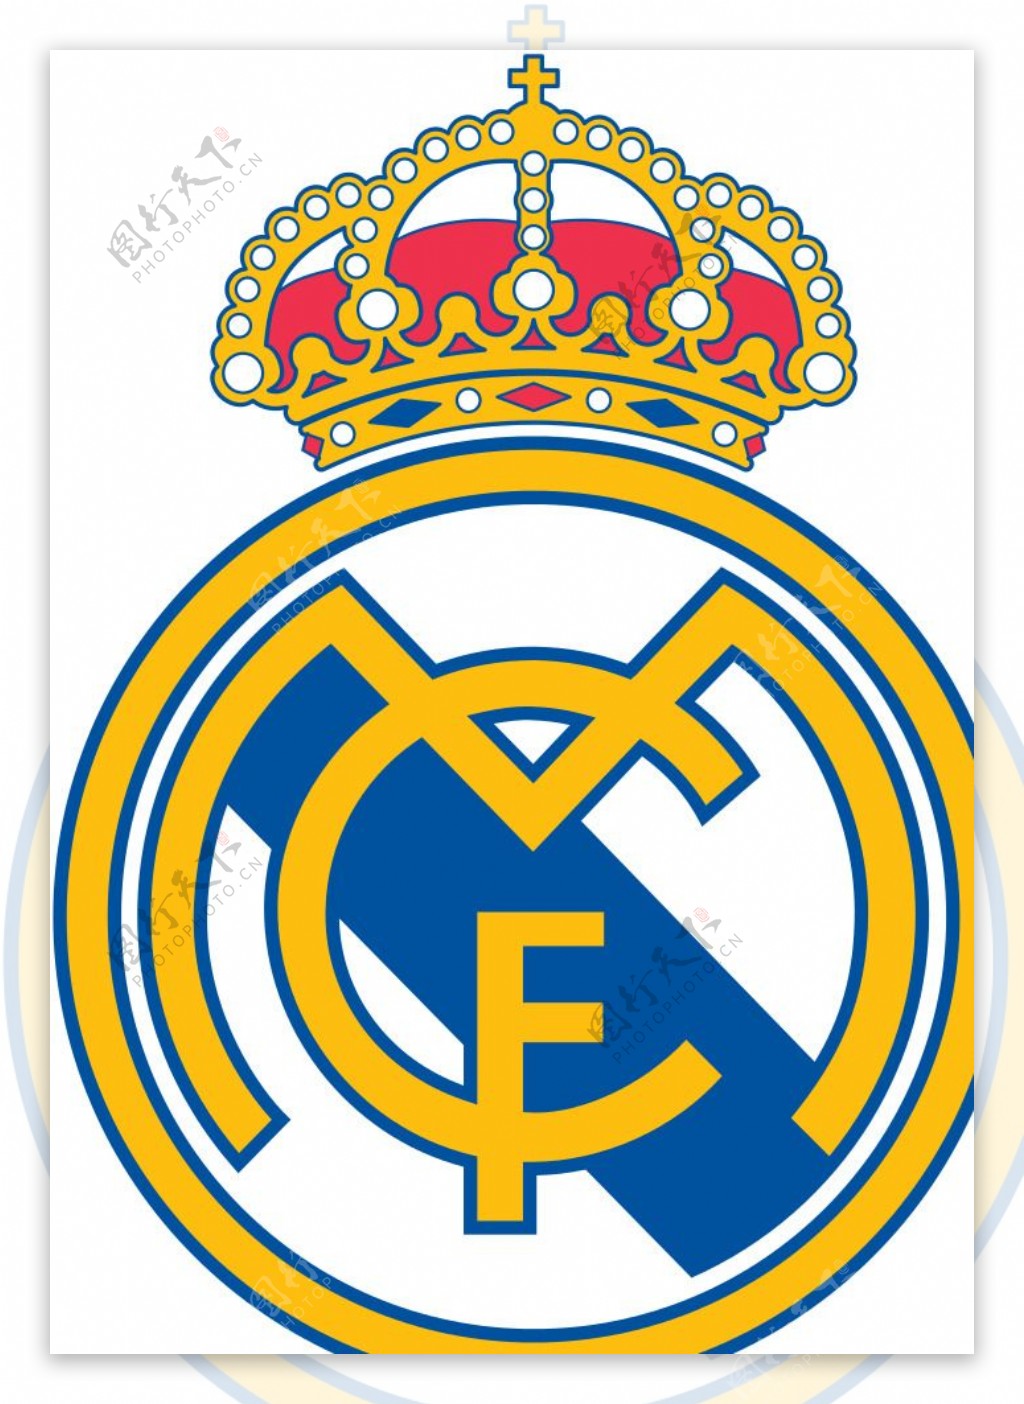 皇家马德里足球俱乐部徽标